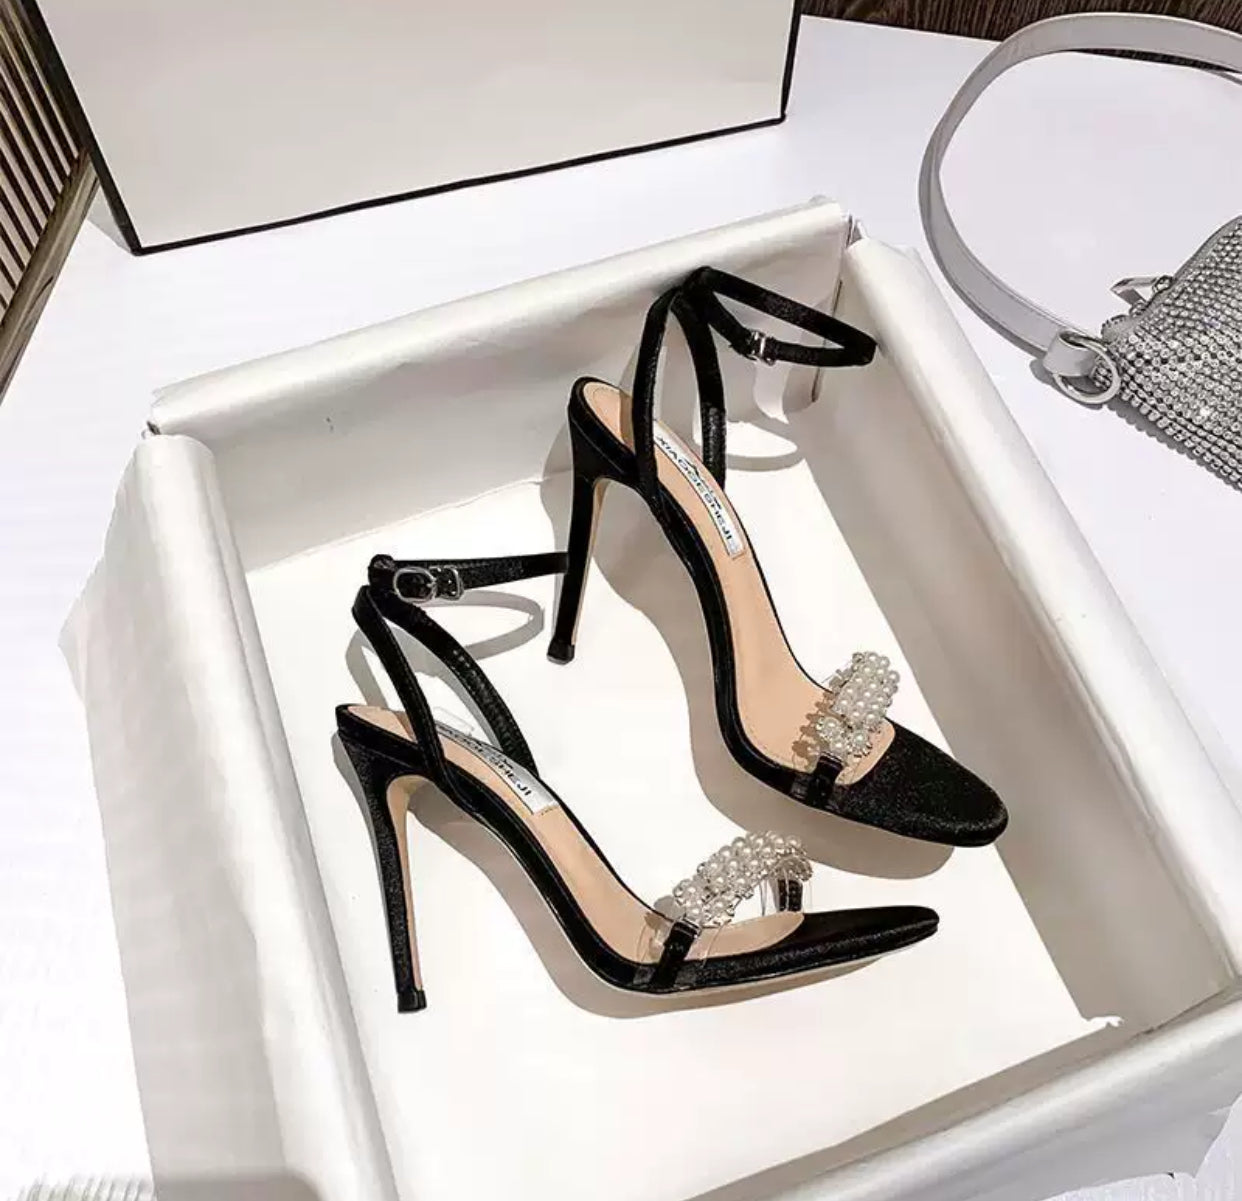 Women’s high heels